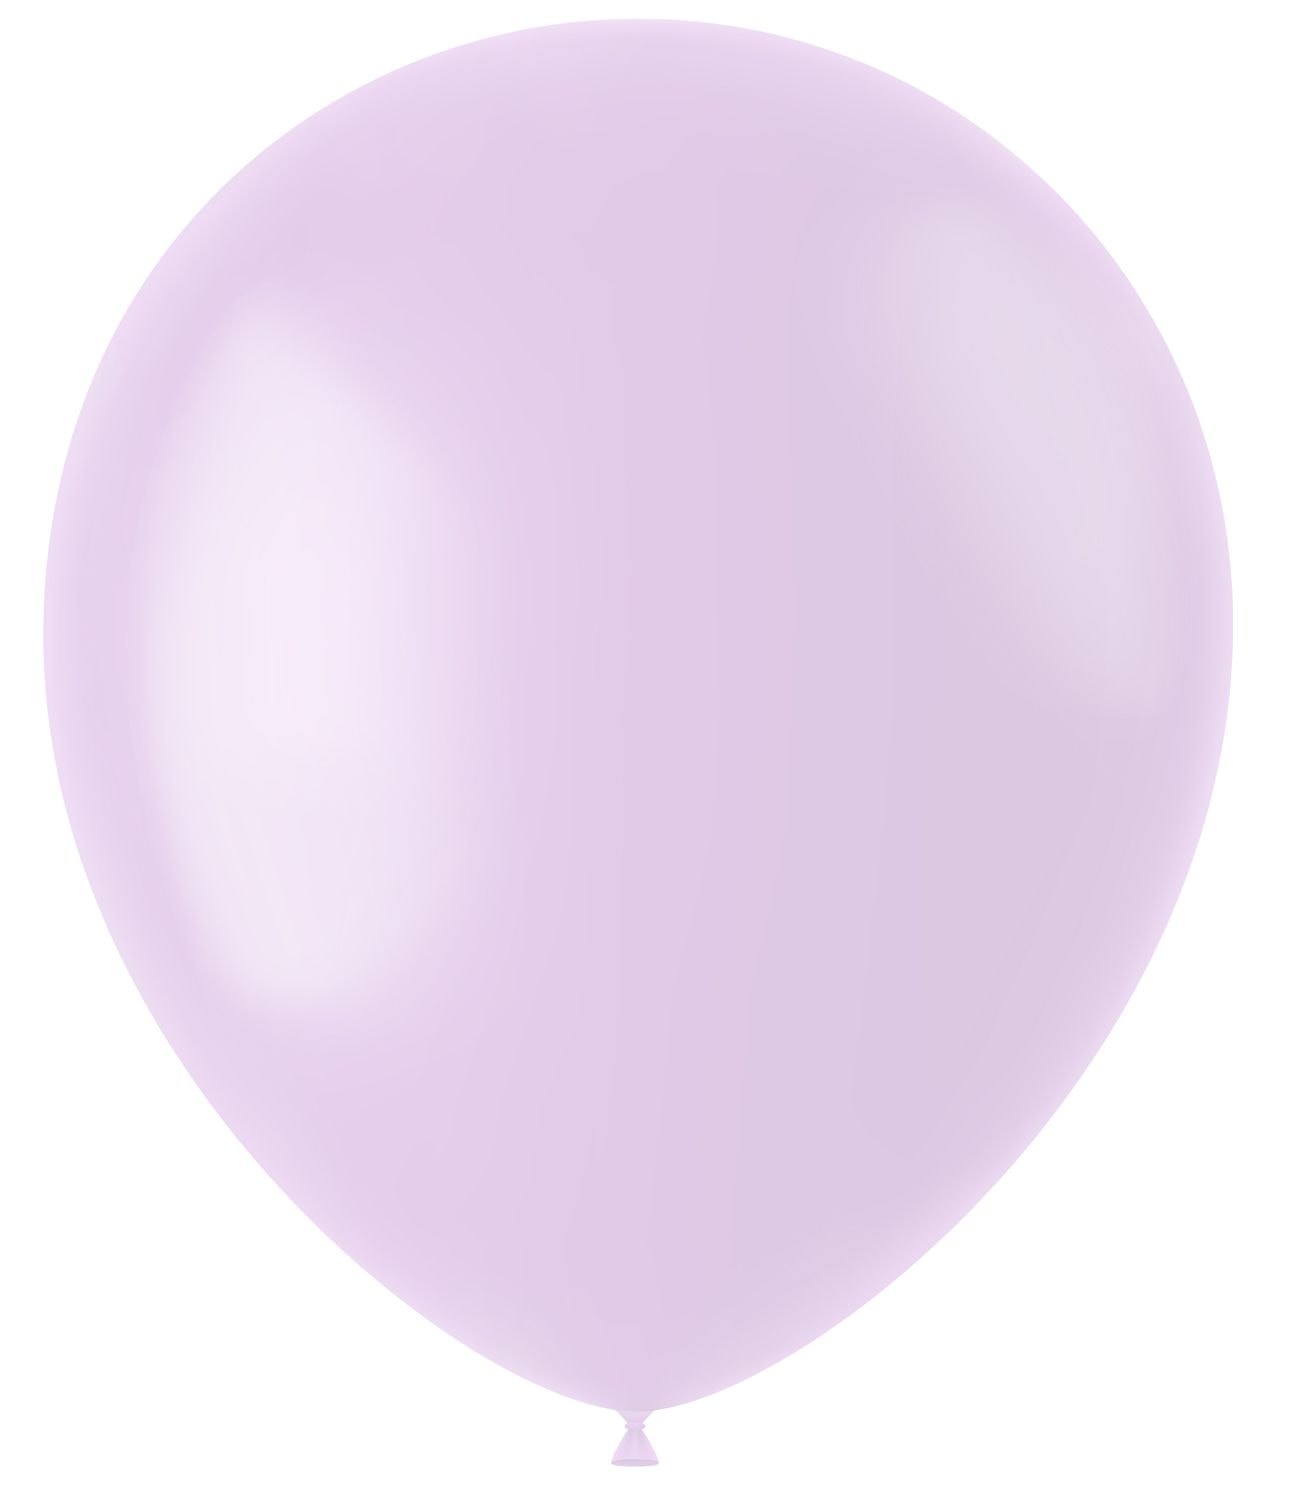 Lila ballonnen matte kleur